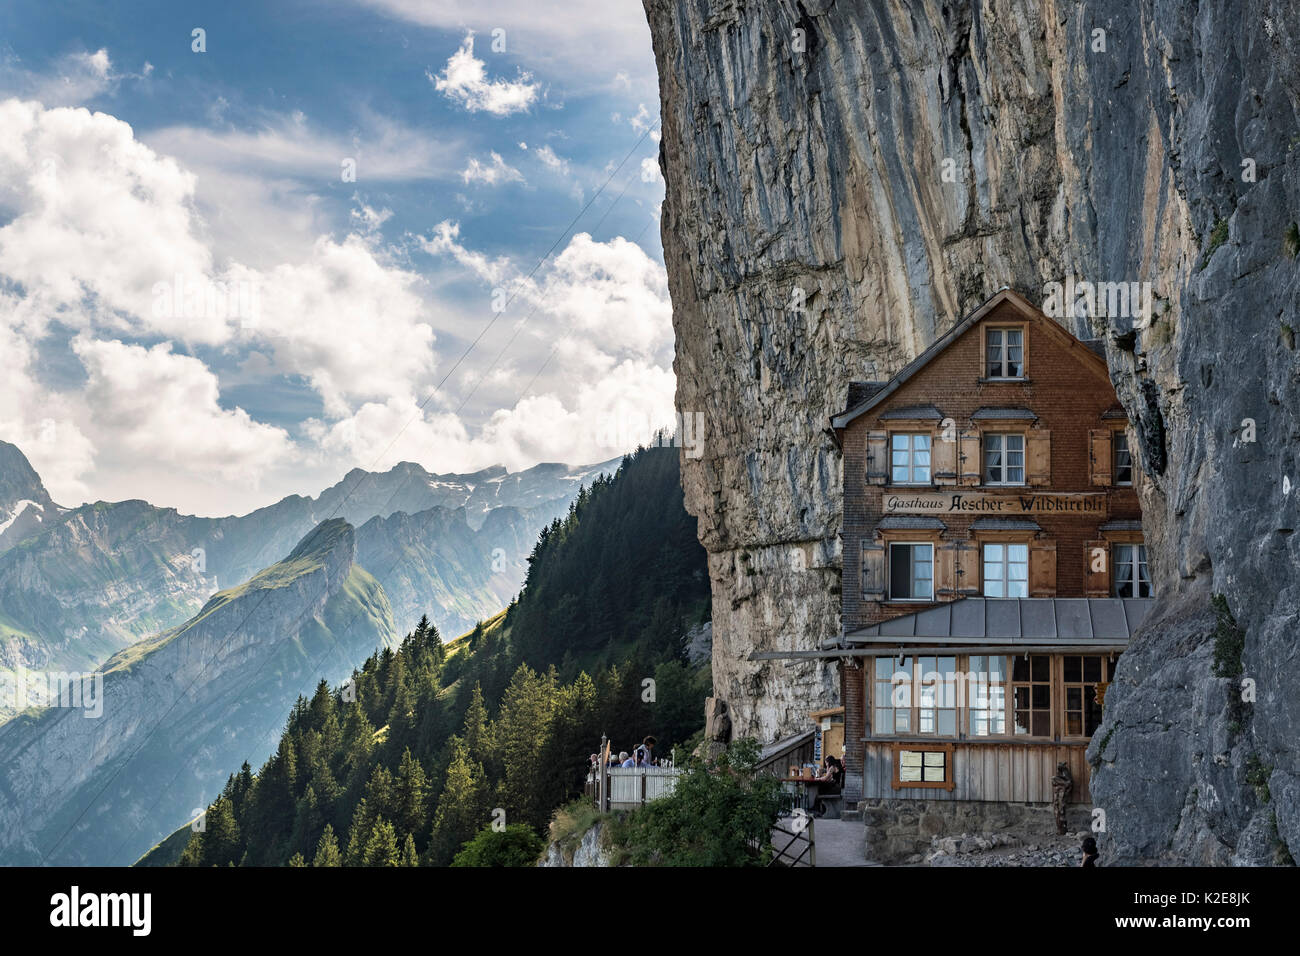 Aescher guesthouse near Wildkirchli below the Ebenalp, Alpstein, Canton of Appenzell Innerrhoden, Switzerland Stock Photo